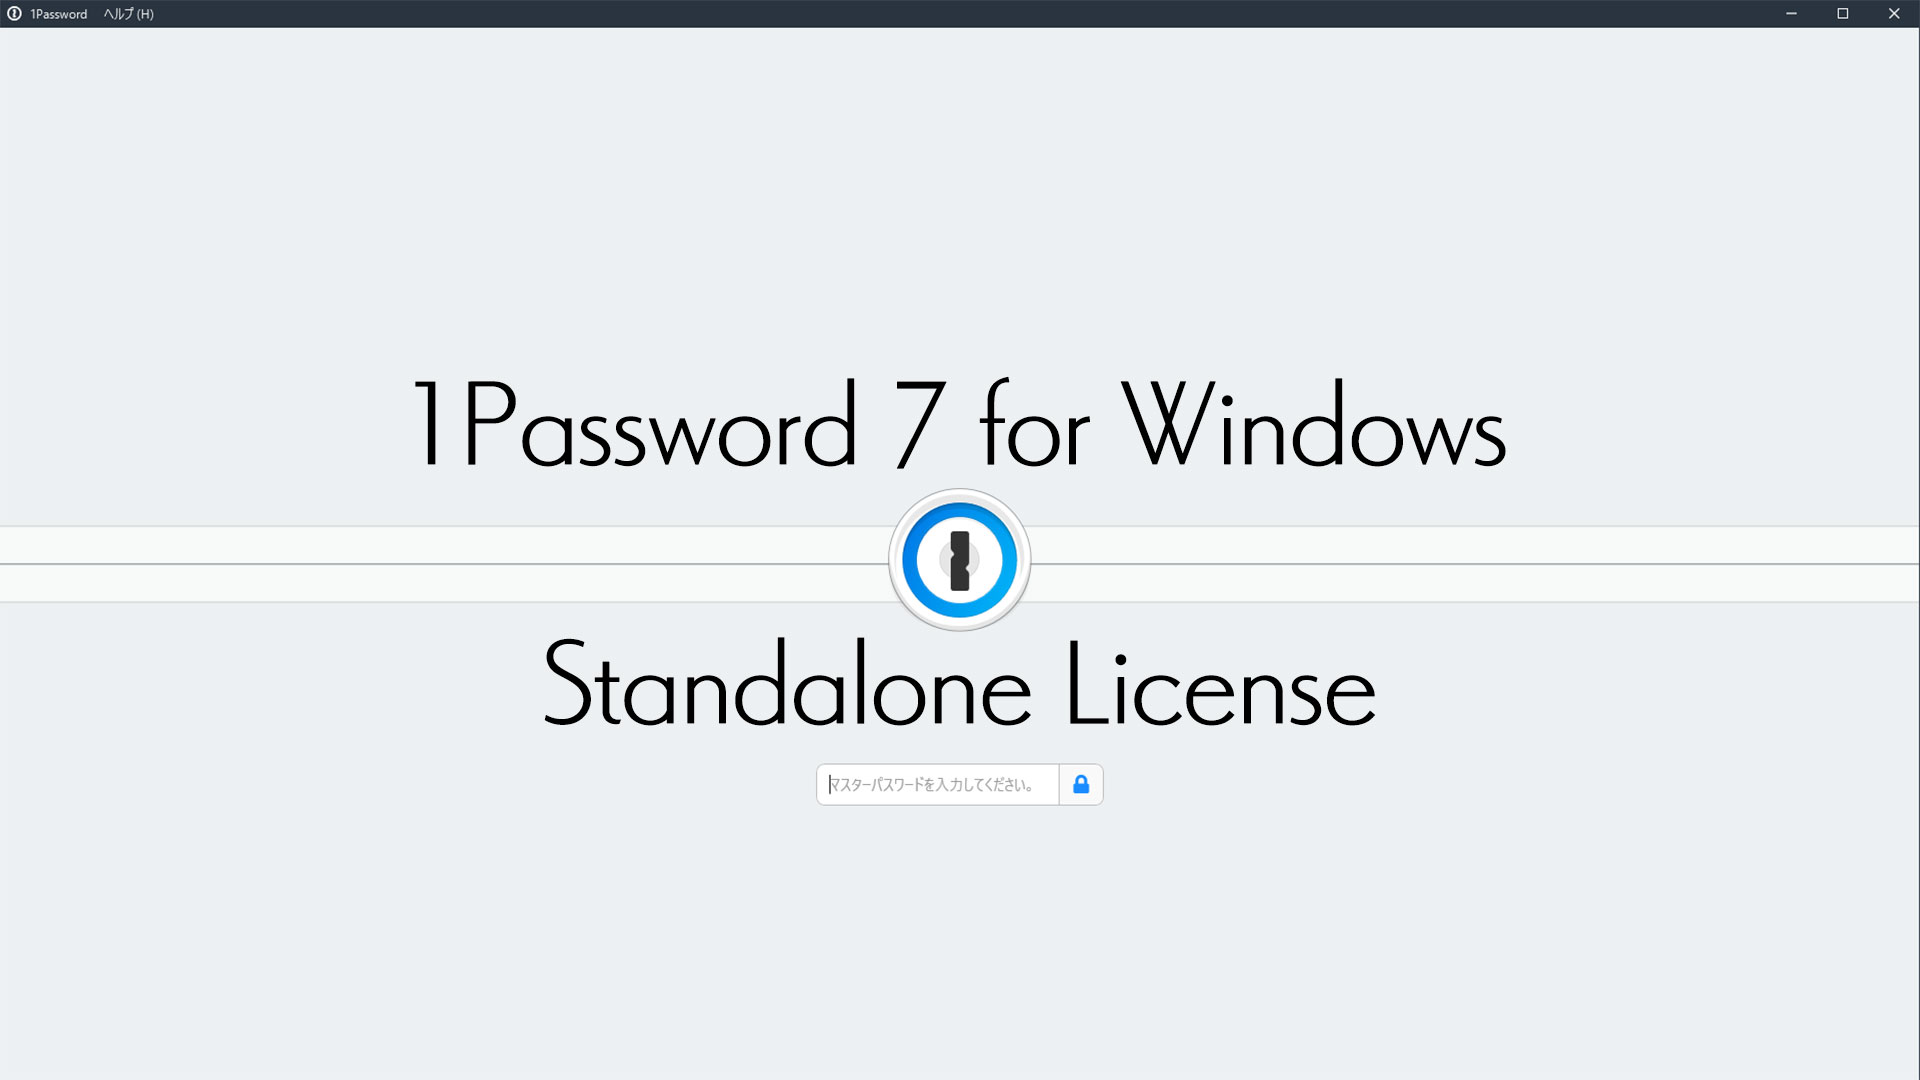 1Password 7 for Windowsのスタンドアロンライセンスを購入する方法